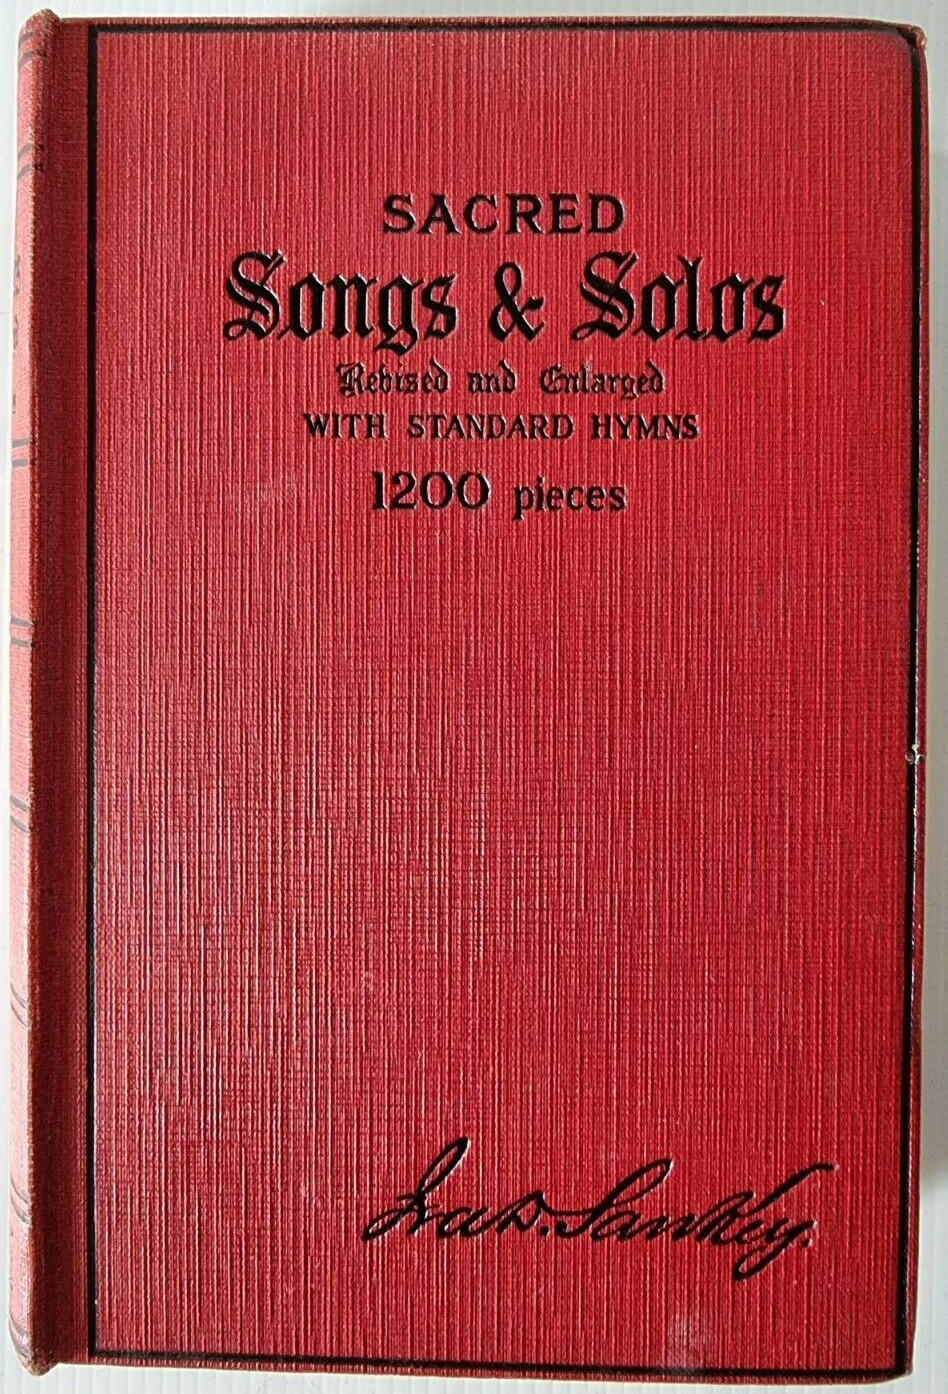 A Sankey Hymnbook